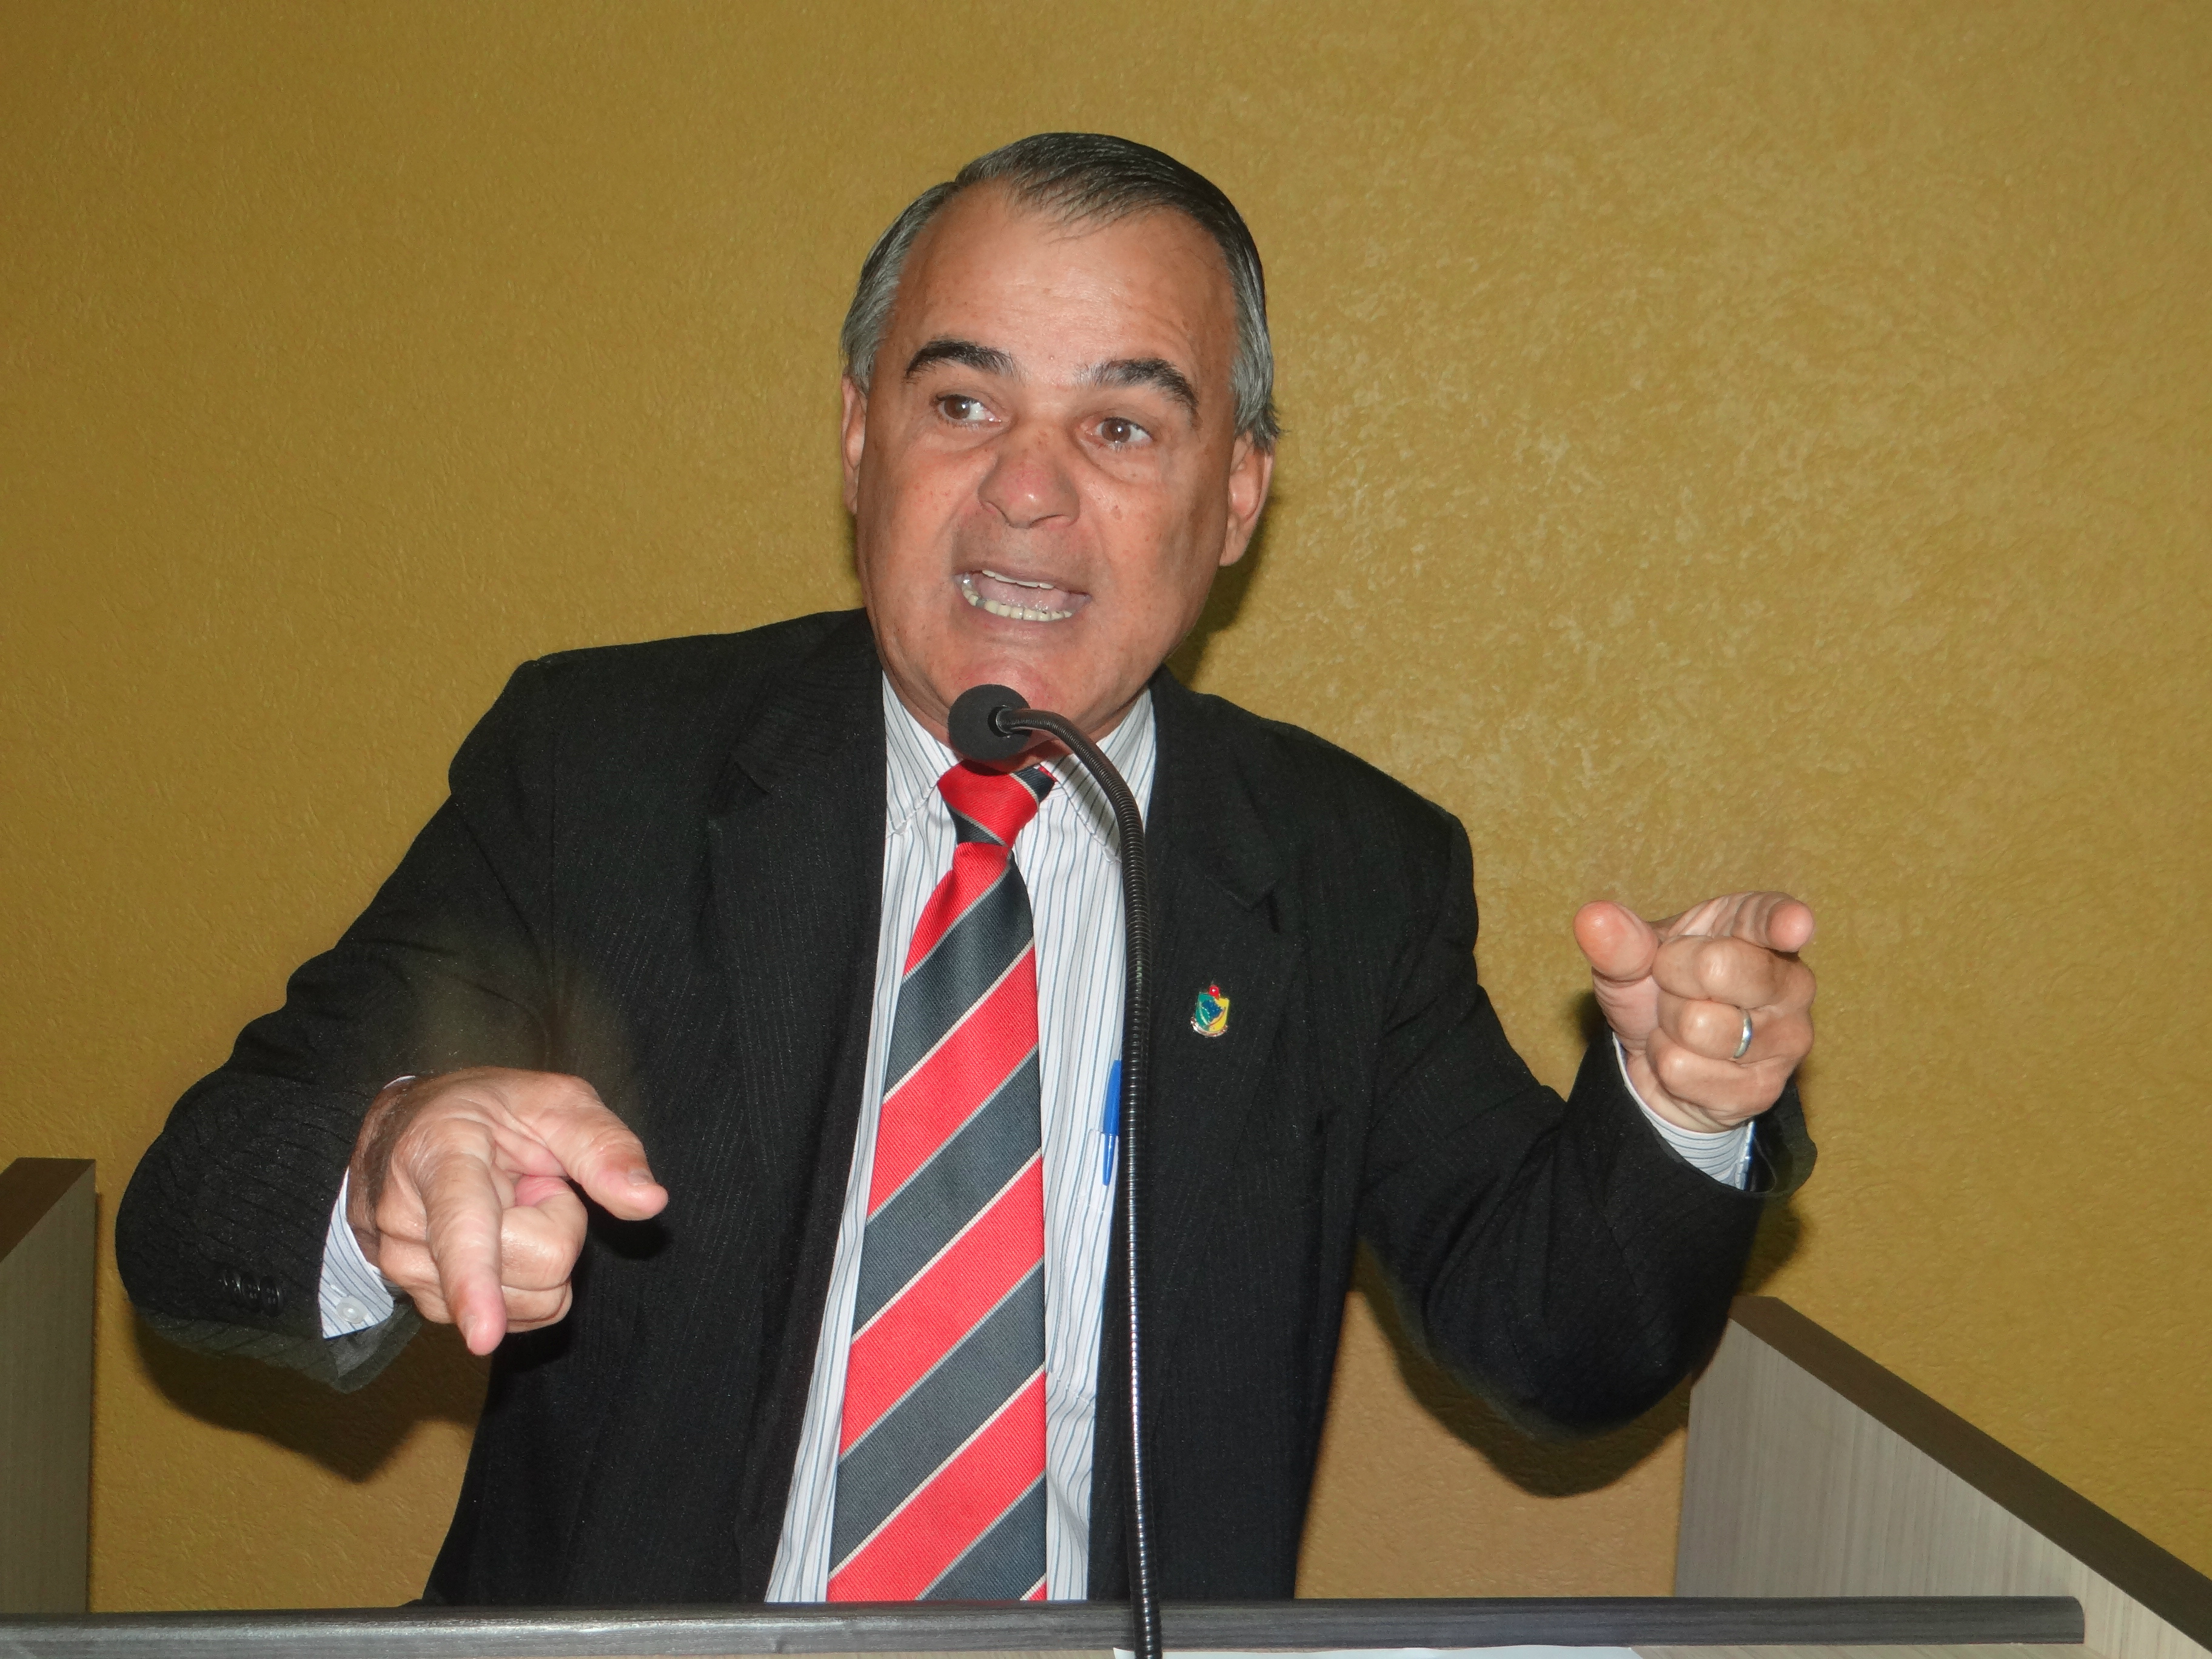 Vereador Anilson Prego (PSB) vai presidir o legislativo de Amambai em 2016 / Foto: Moreira Produções